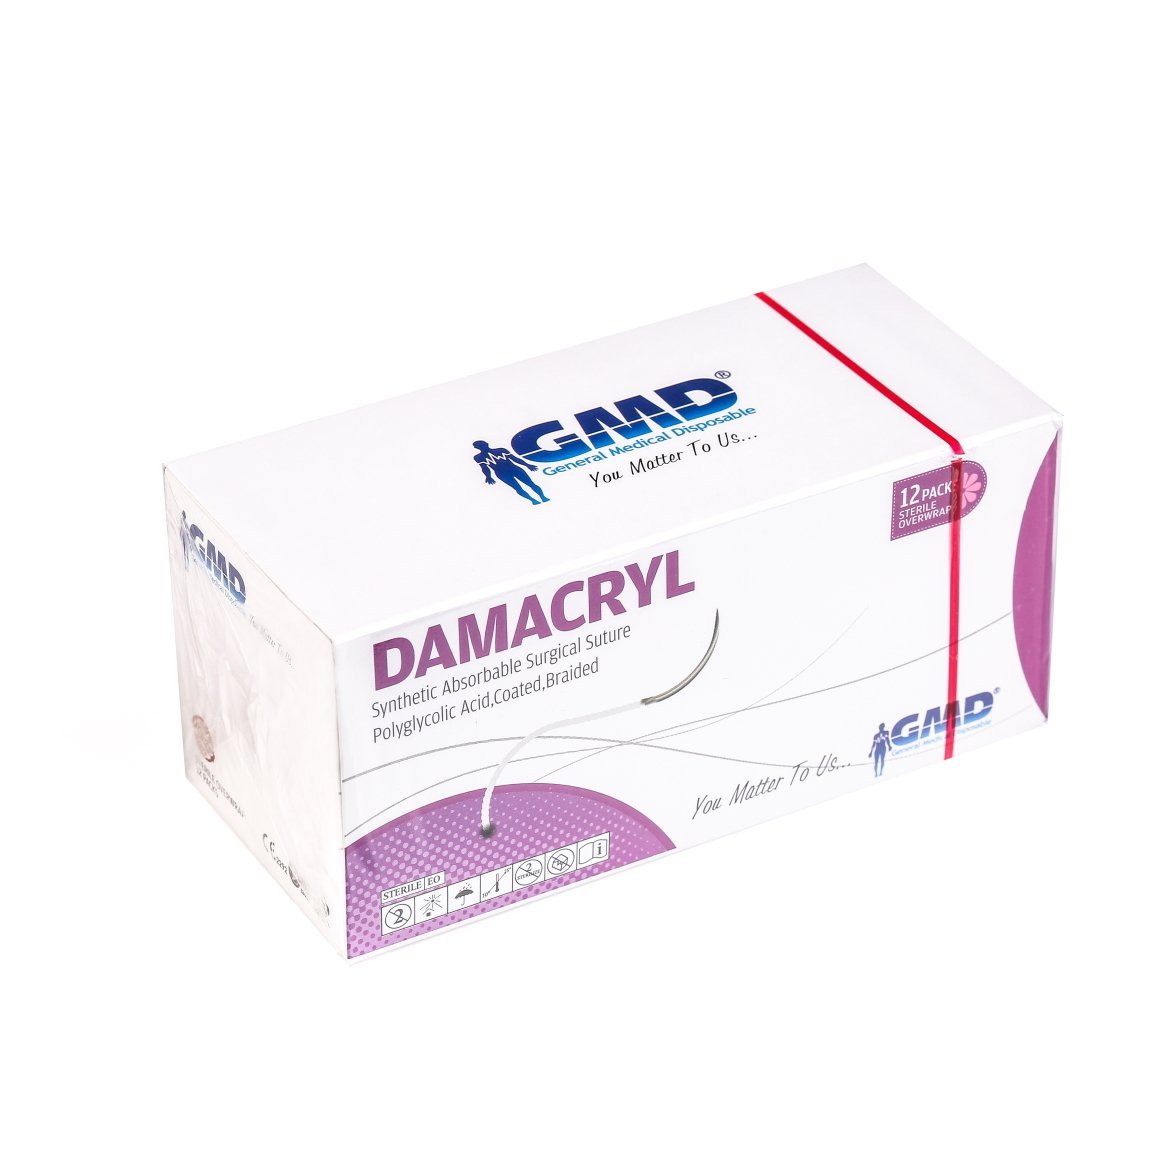 Damacryl Emilebilir Cerrahi Sütür - PGA İplik - USP:4-0-75cm - 3/8 Daire 20 mm - Ters Keskin İğne